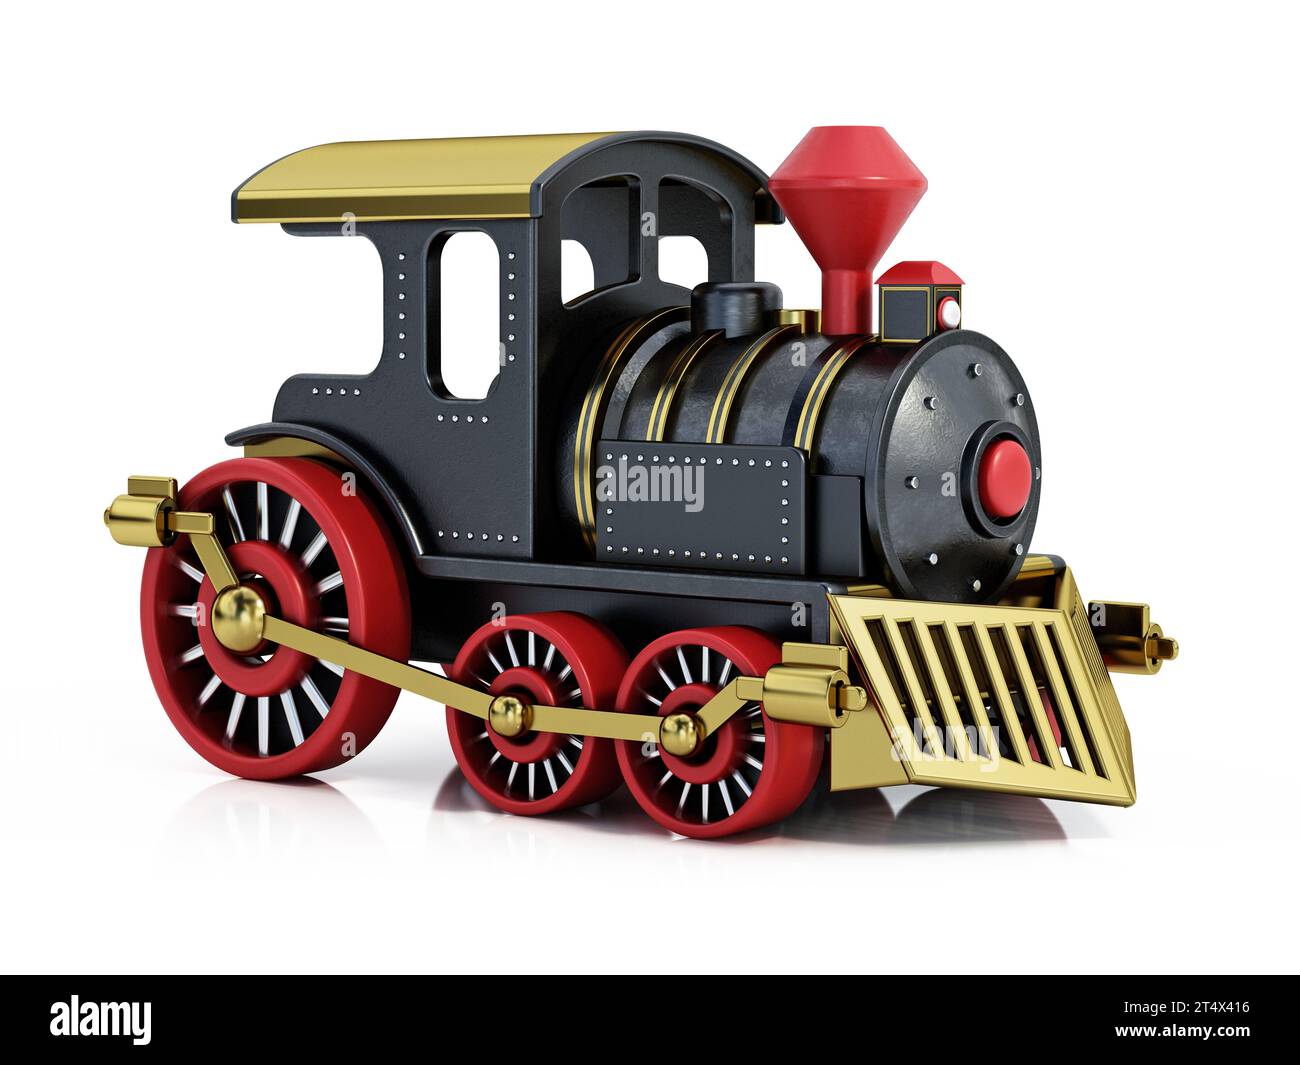 Train jouet isolé sur fond blanc. Illustration 3D. Banque D'Images